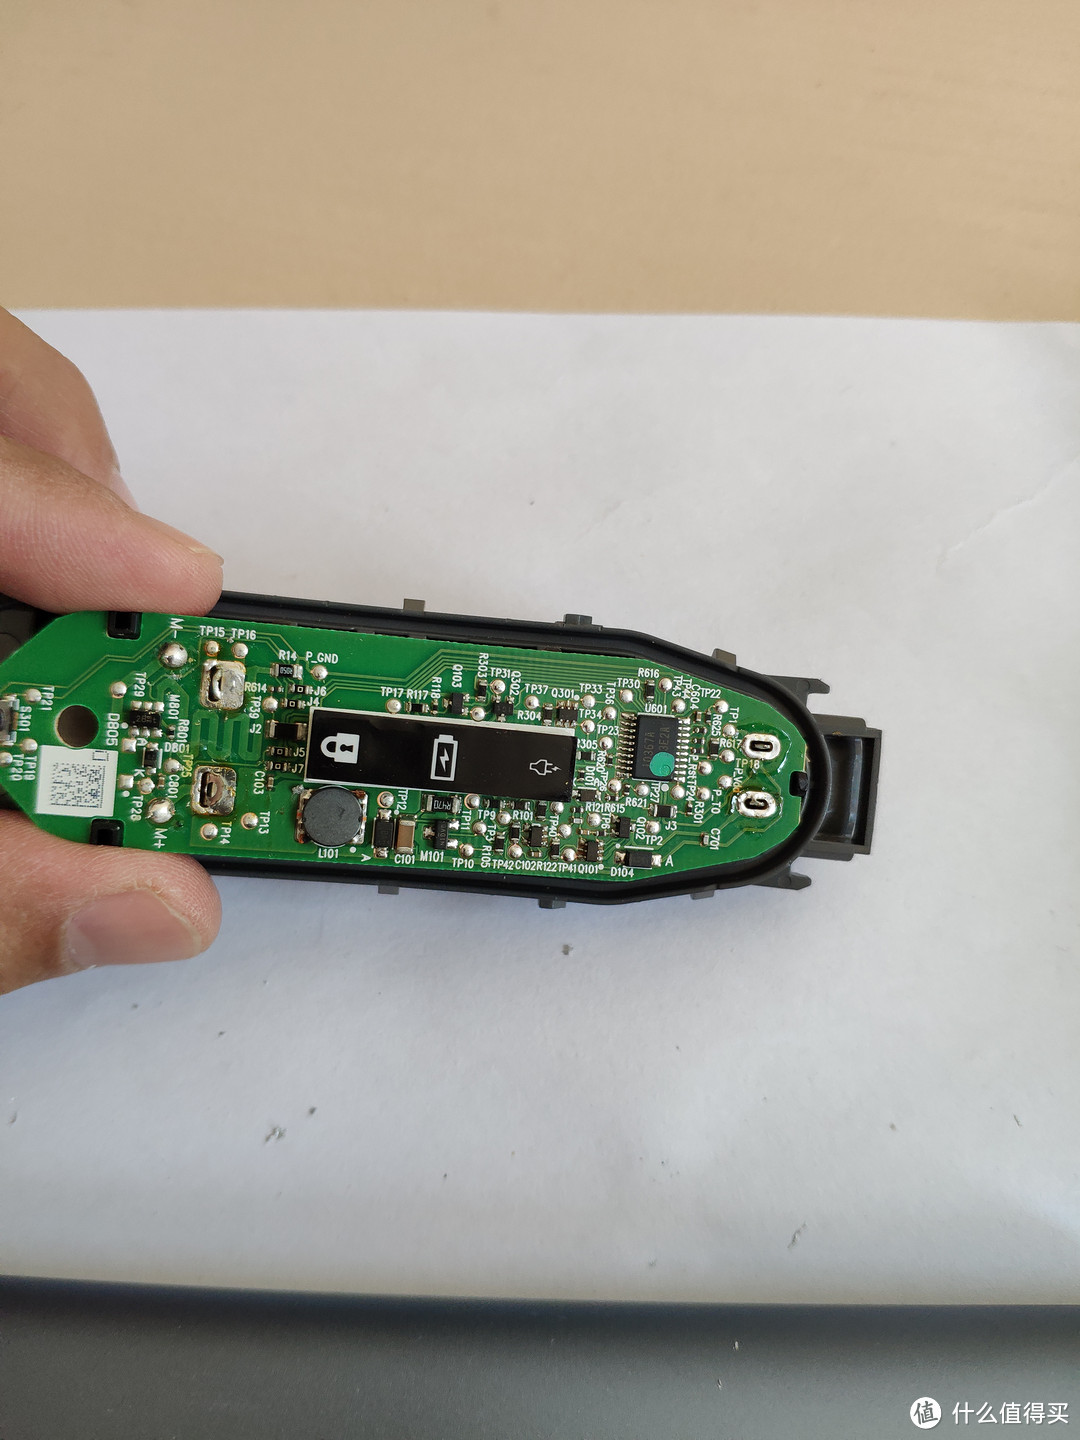 旧飞利浦（PhilipsRQ360锐锋系列）剃须刀拆解更换充电电池复活全过程